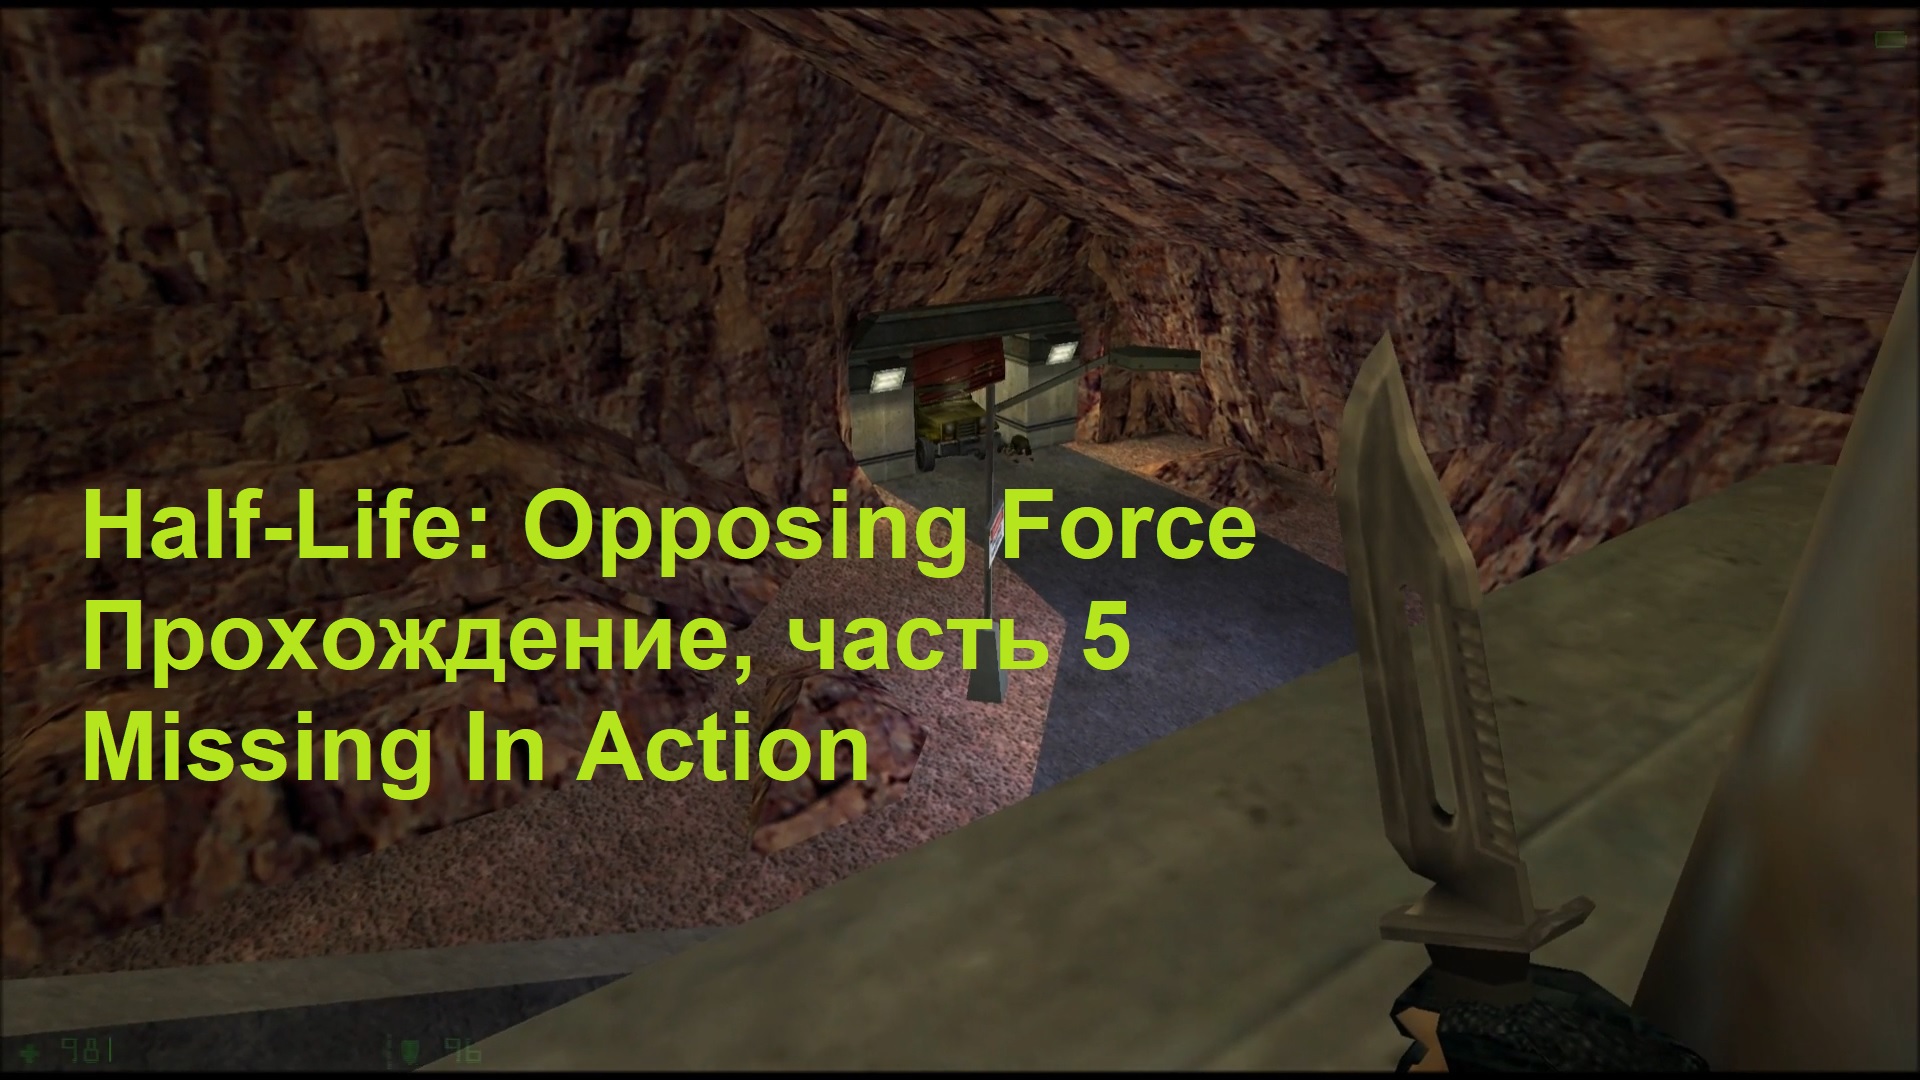 Half-Life: Opposing Force, Прохождение, часть 5 - Missing In Action